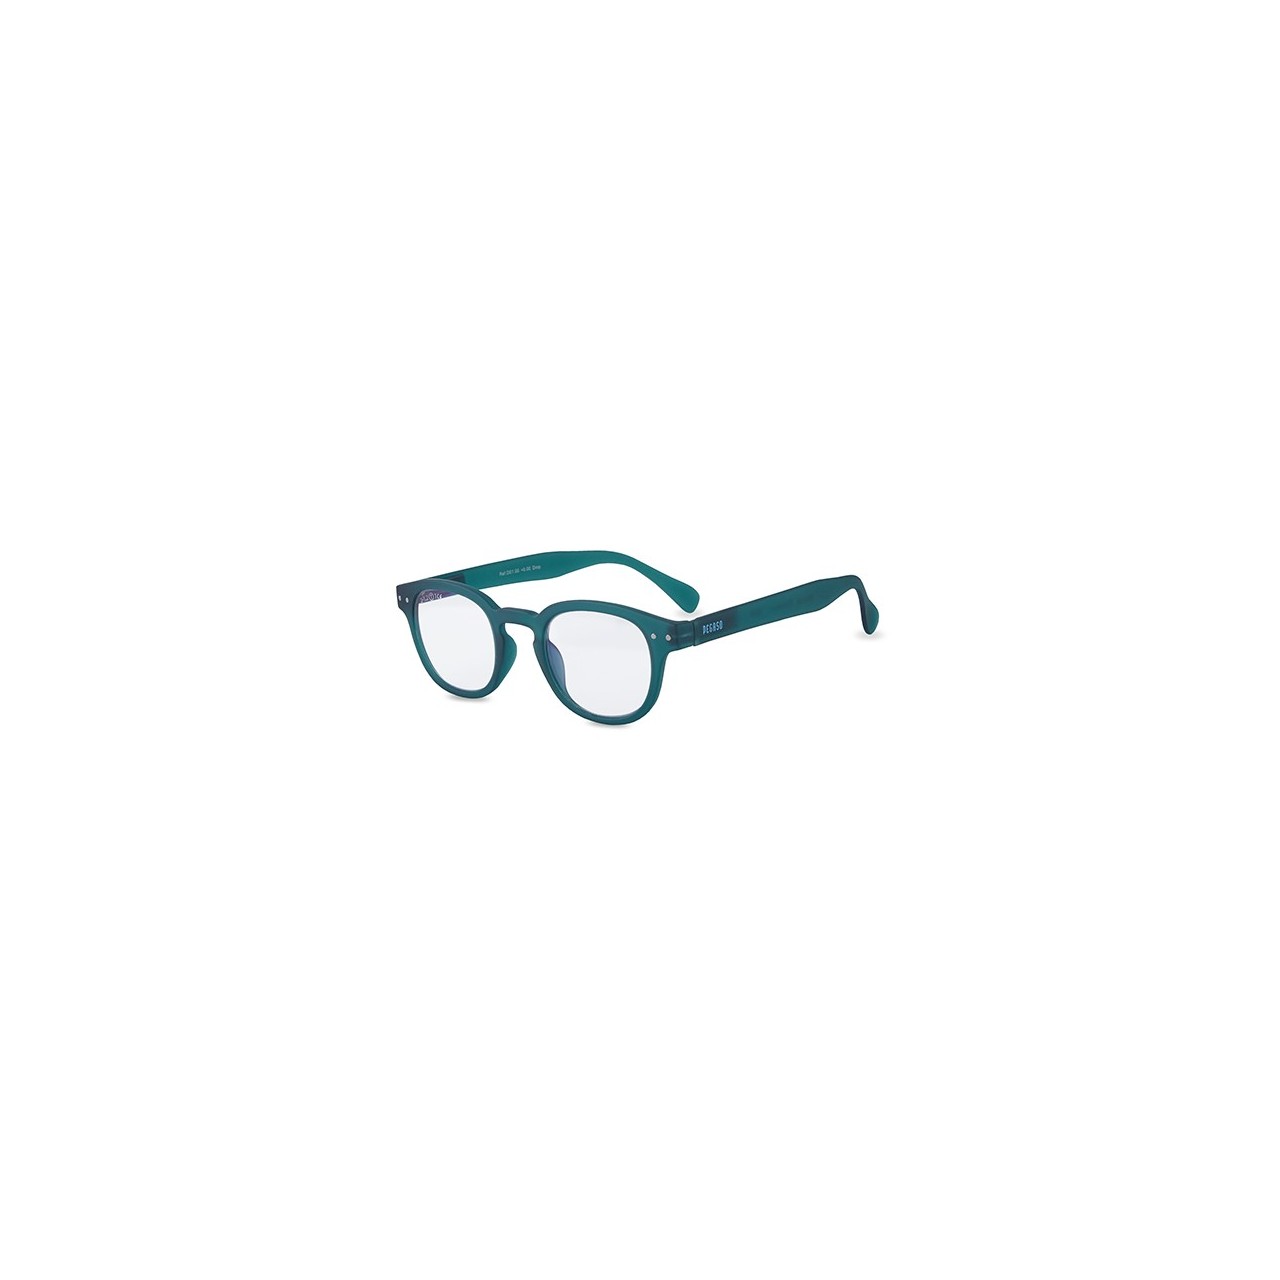 NoCry Gafas de sol de seguridad con lentes envolventes teñidas de verde;  gafas de seguridad tintadas para hombres y mujeres con brazos ajustables y